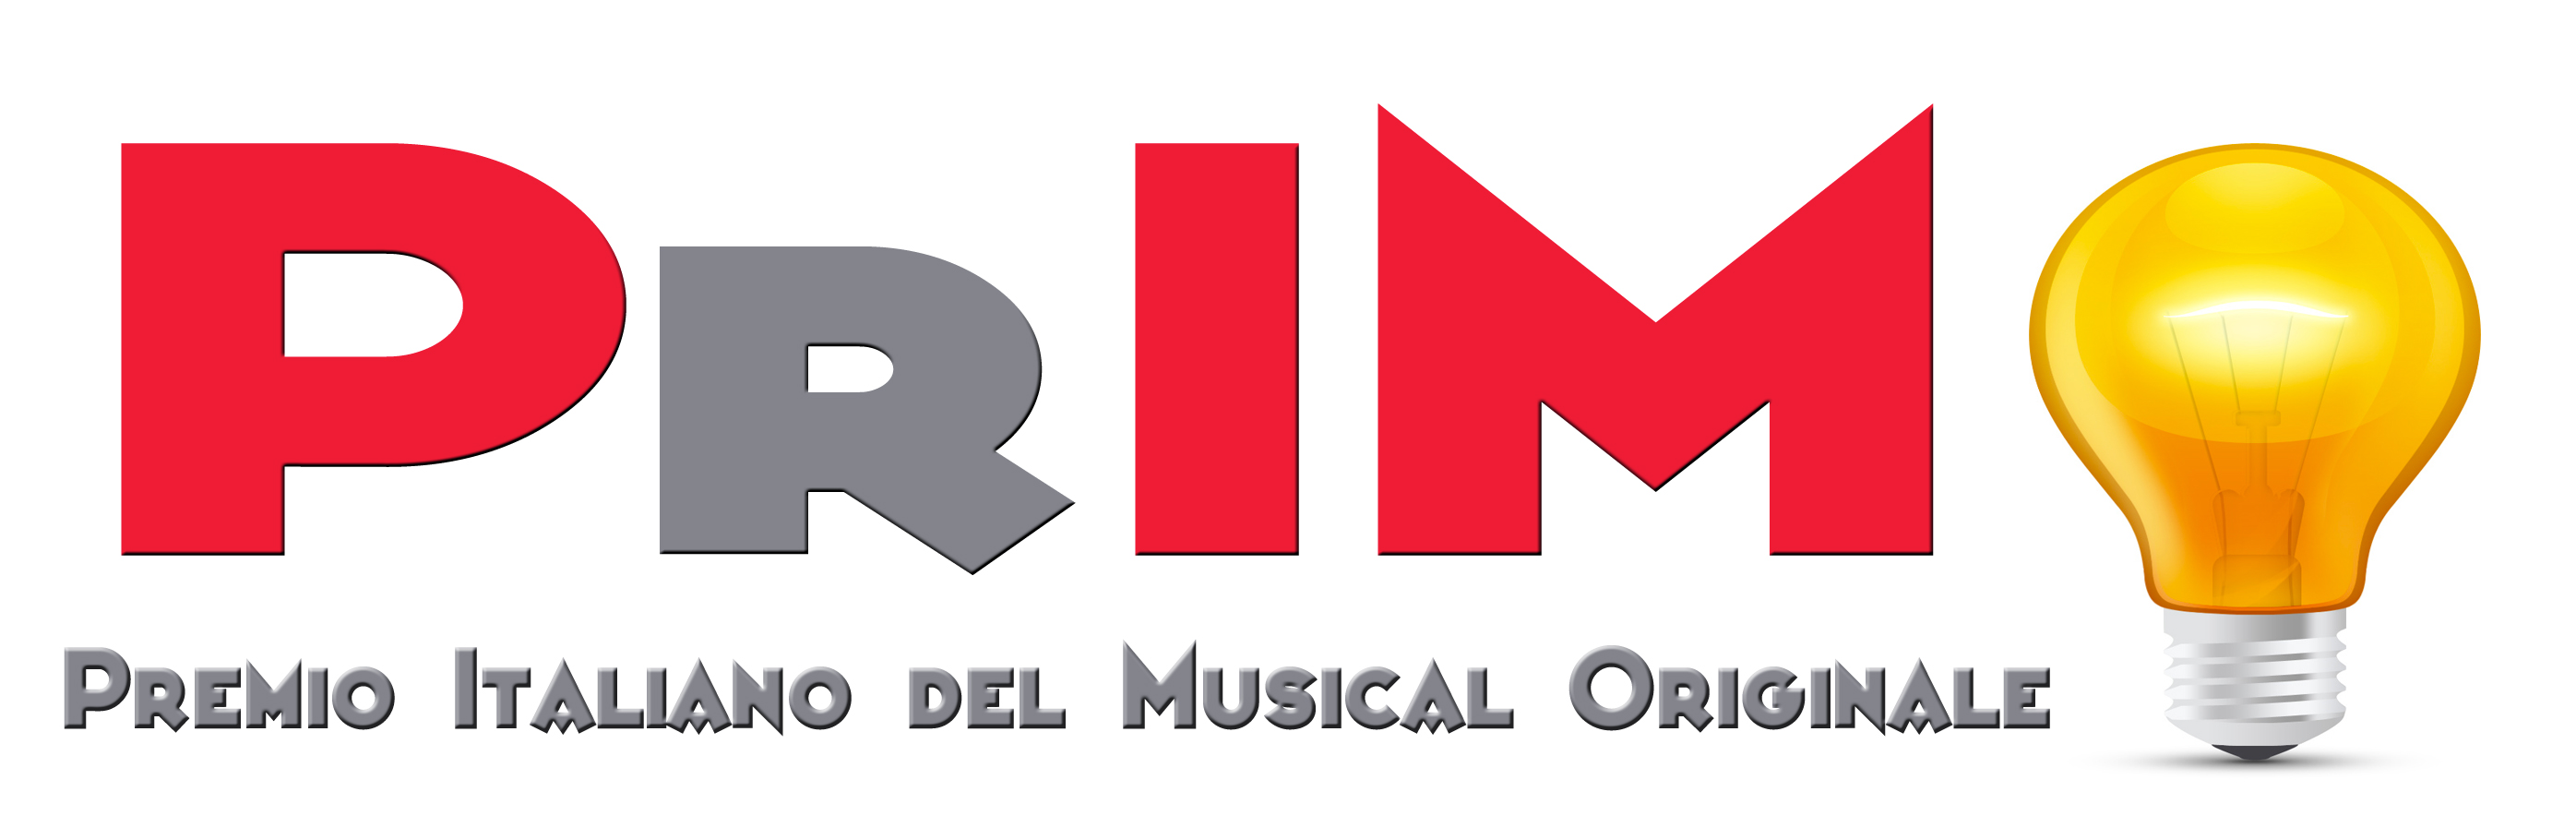 PrIMO 2016 – PREMIO ITALIANO DEL MUSICAL ORIGINALE